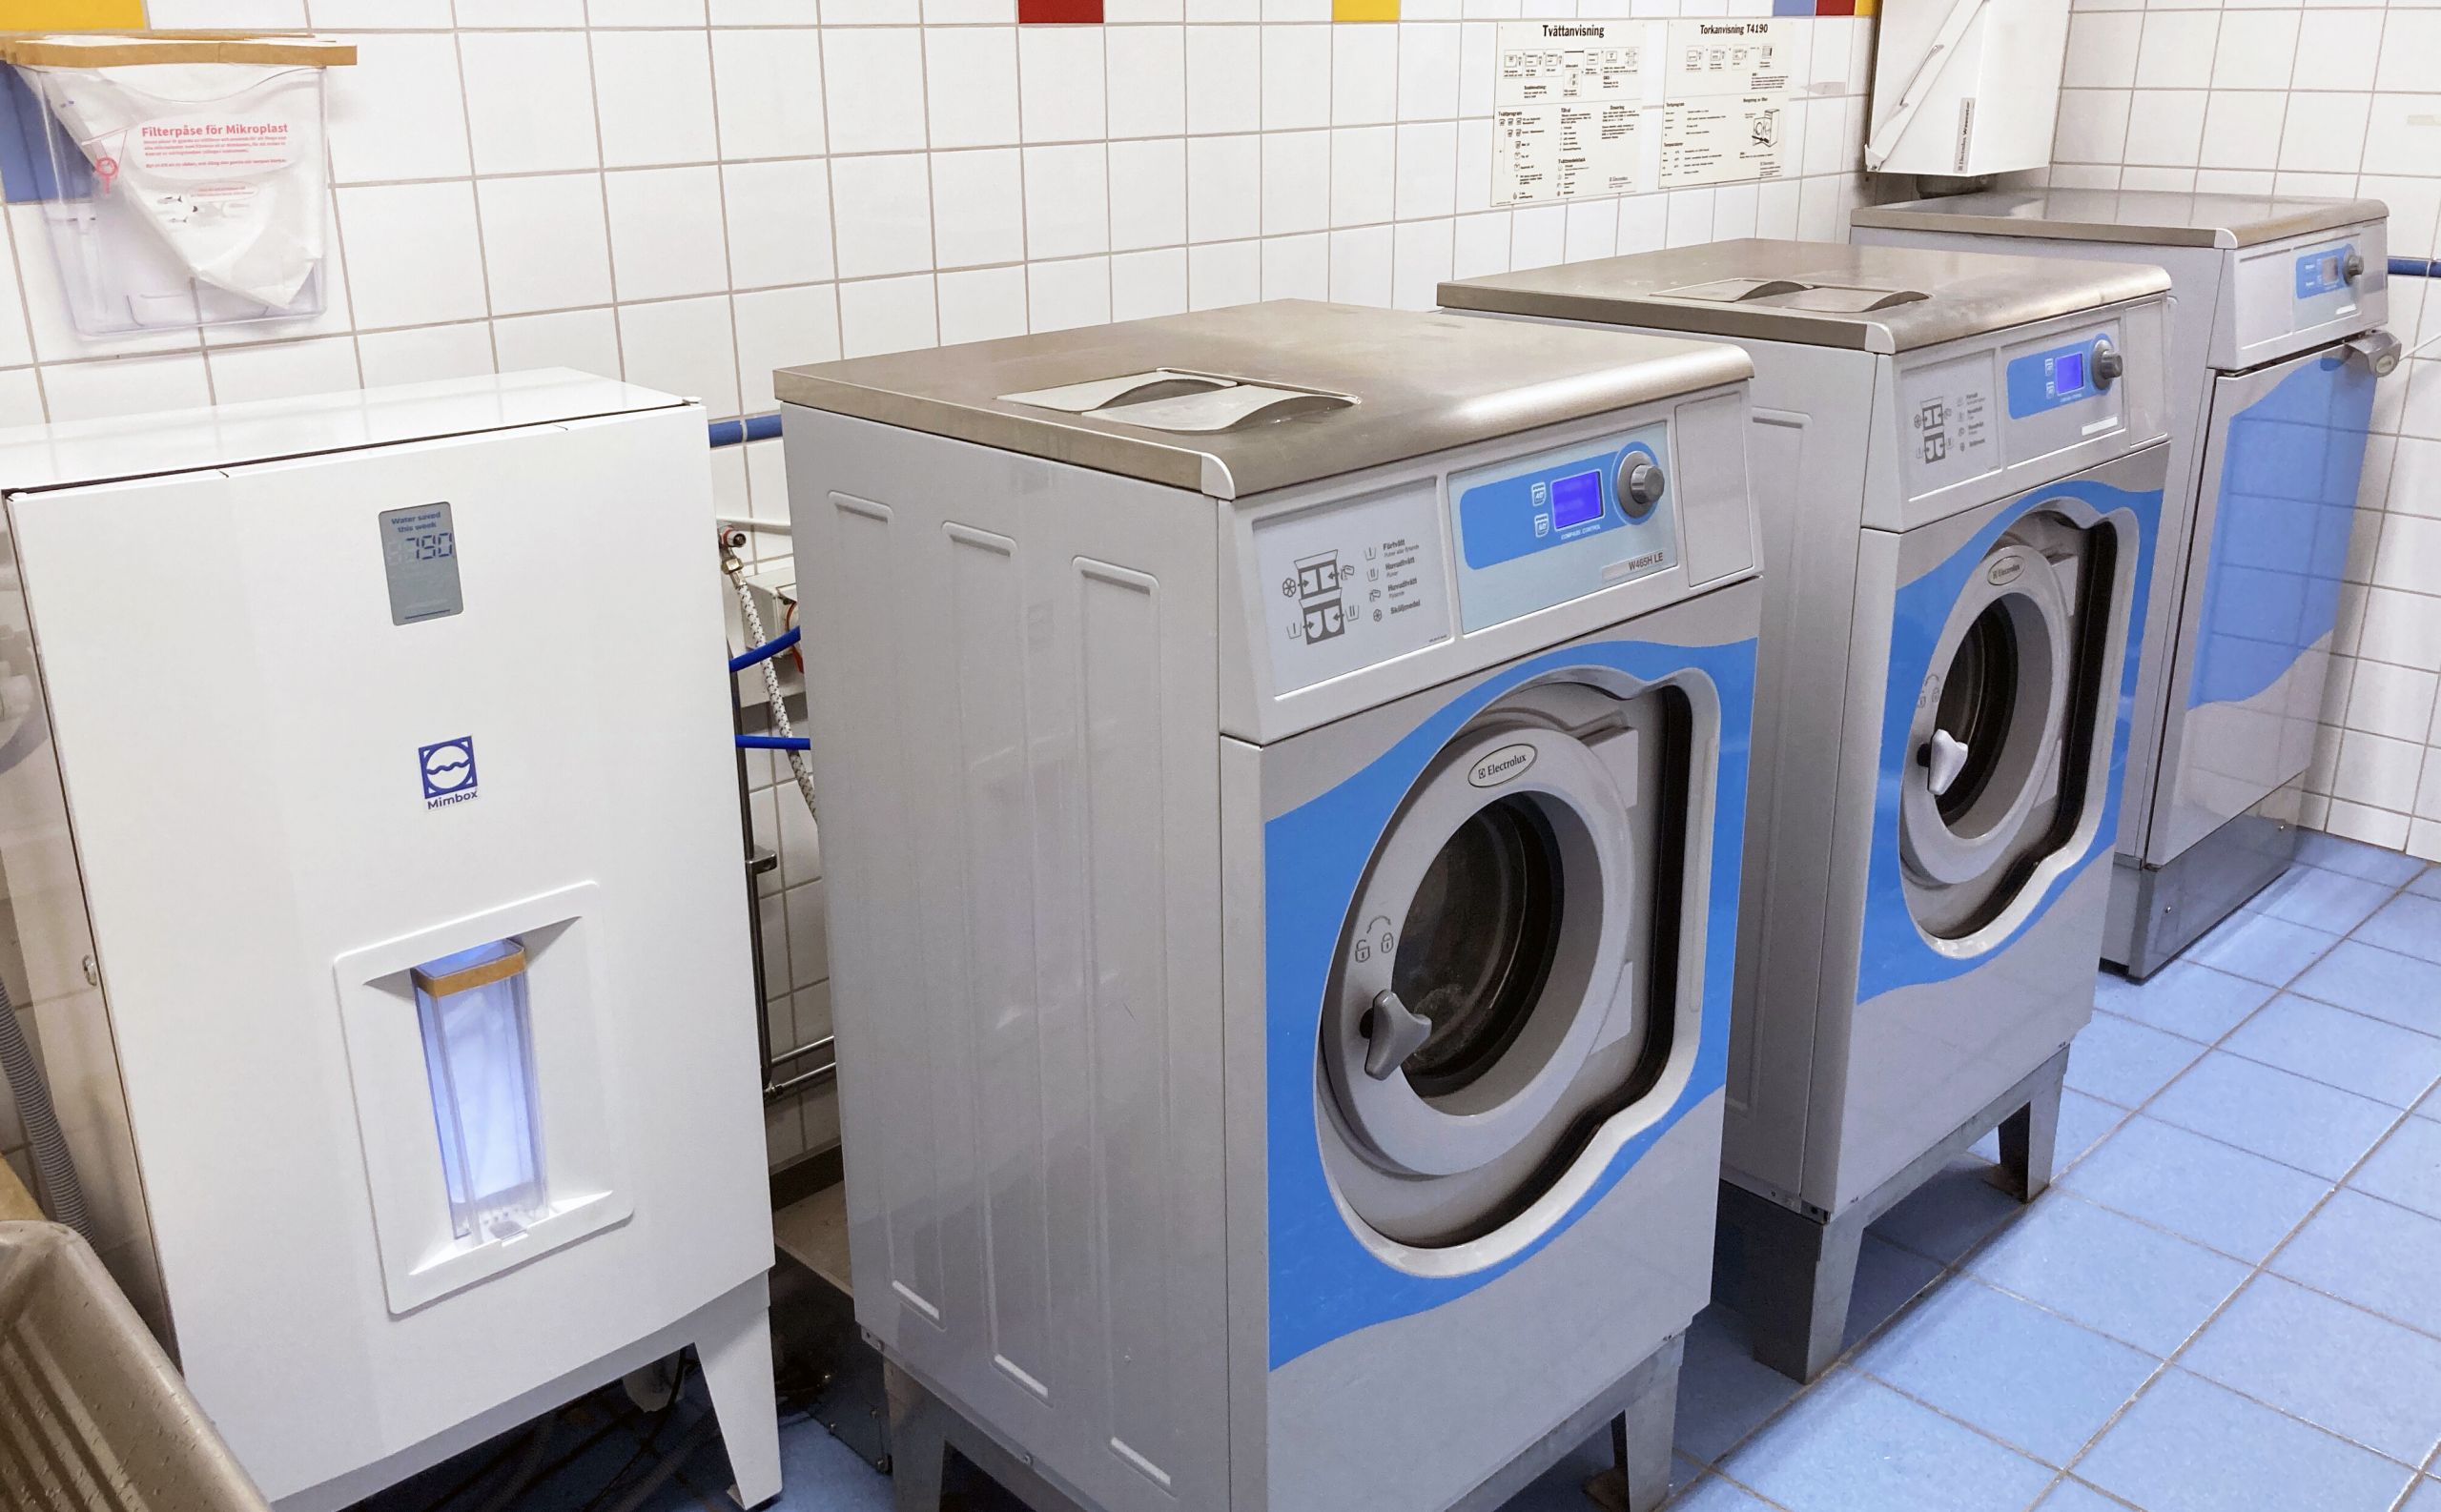 Mimboxen kopplas till den vanliga tvättmaskinen och sparar vatten, energi och filtrerar ut mikroplaster.